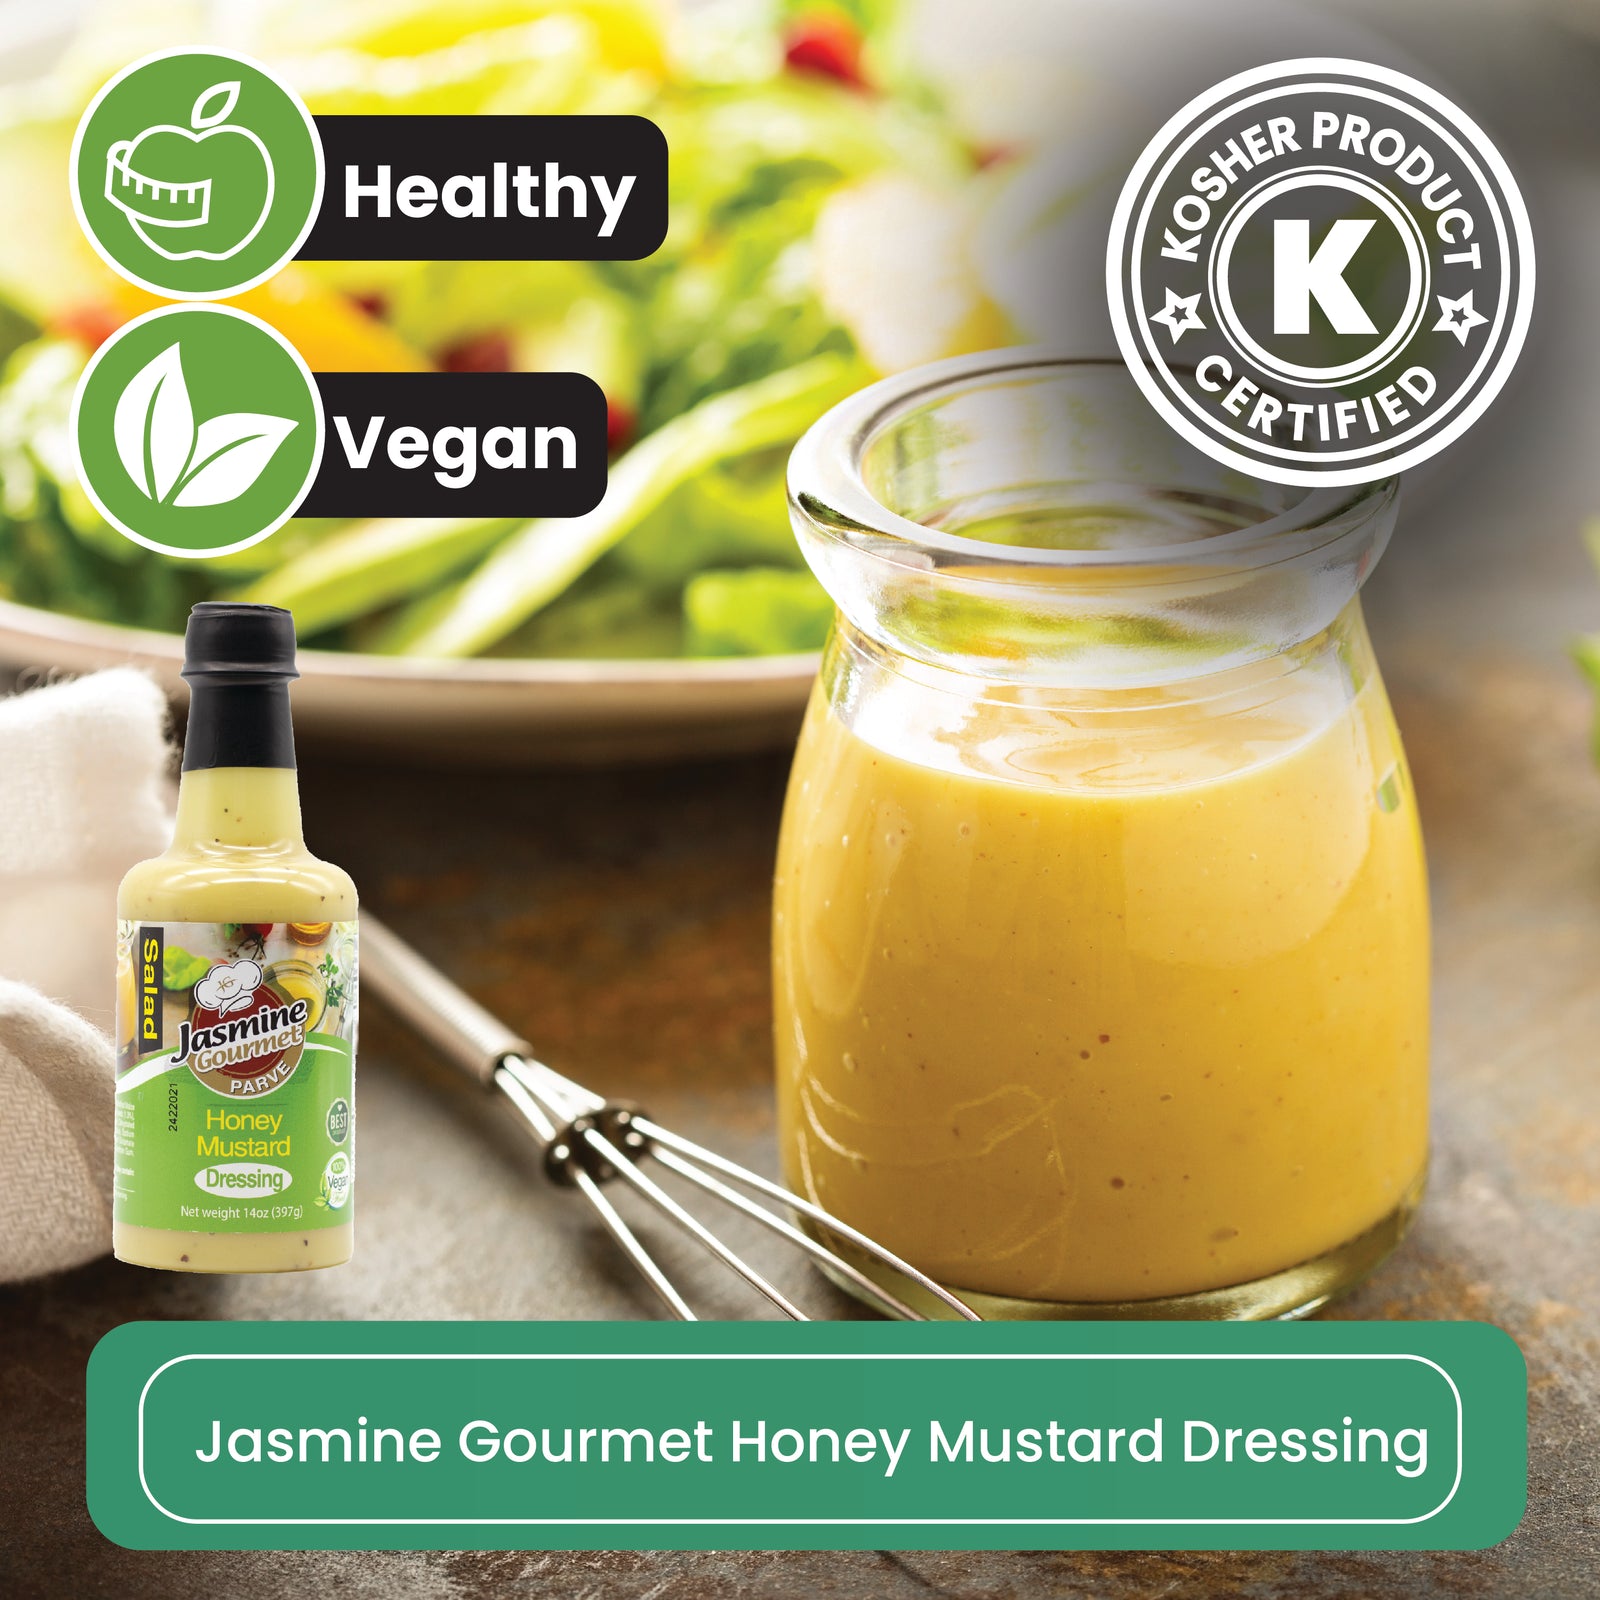 Jasmine Gourmet Honey Mustard Dressing